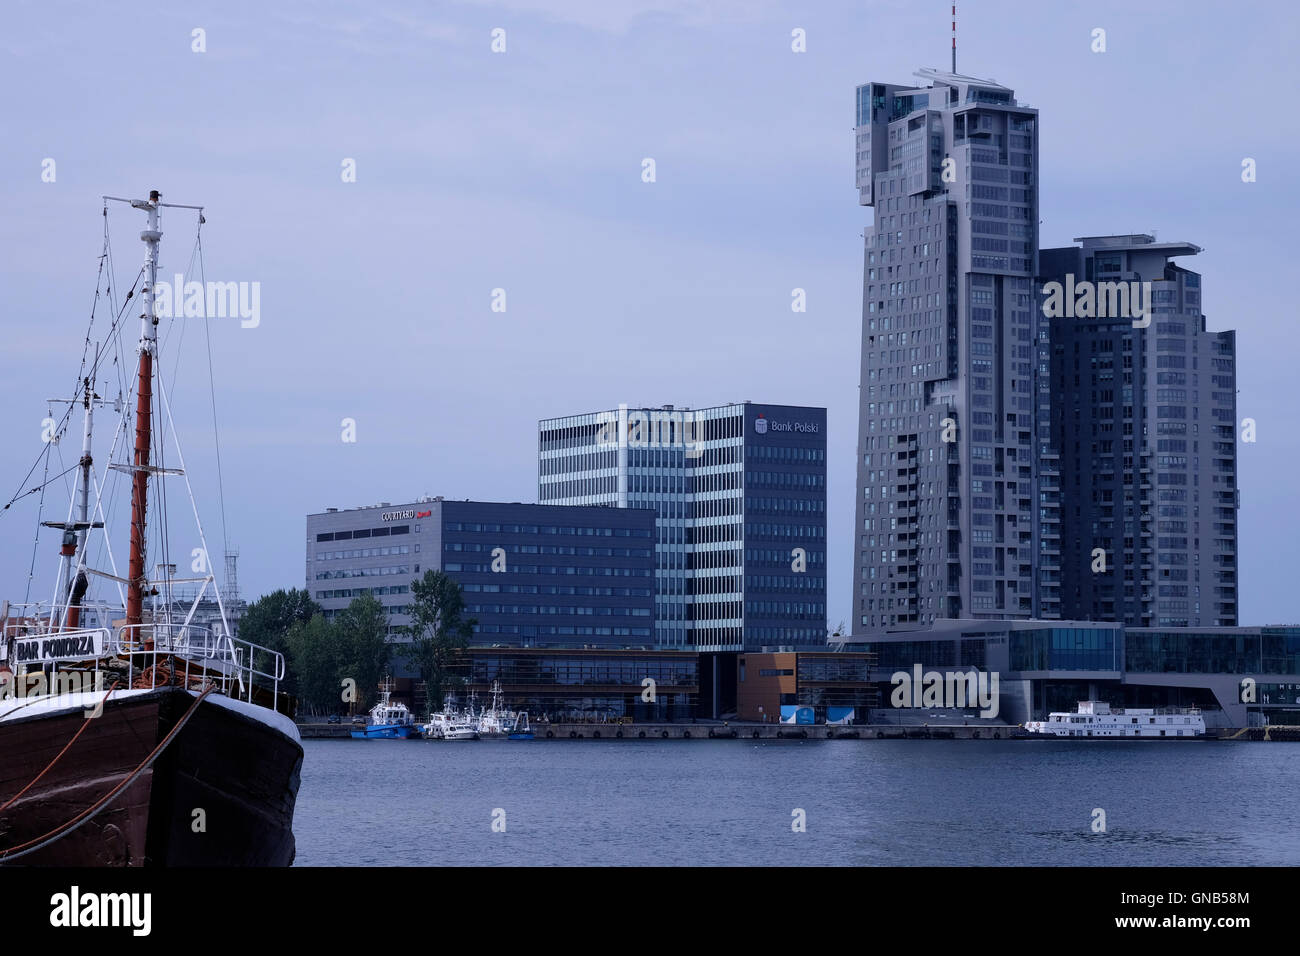 Les immeubles de bureaux au bord de l'eau de la ville portuaire de la Baie de Gdansk Gdynia en Pologne du nord Banque D'Images